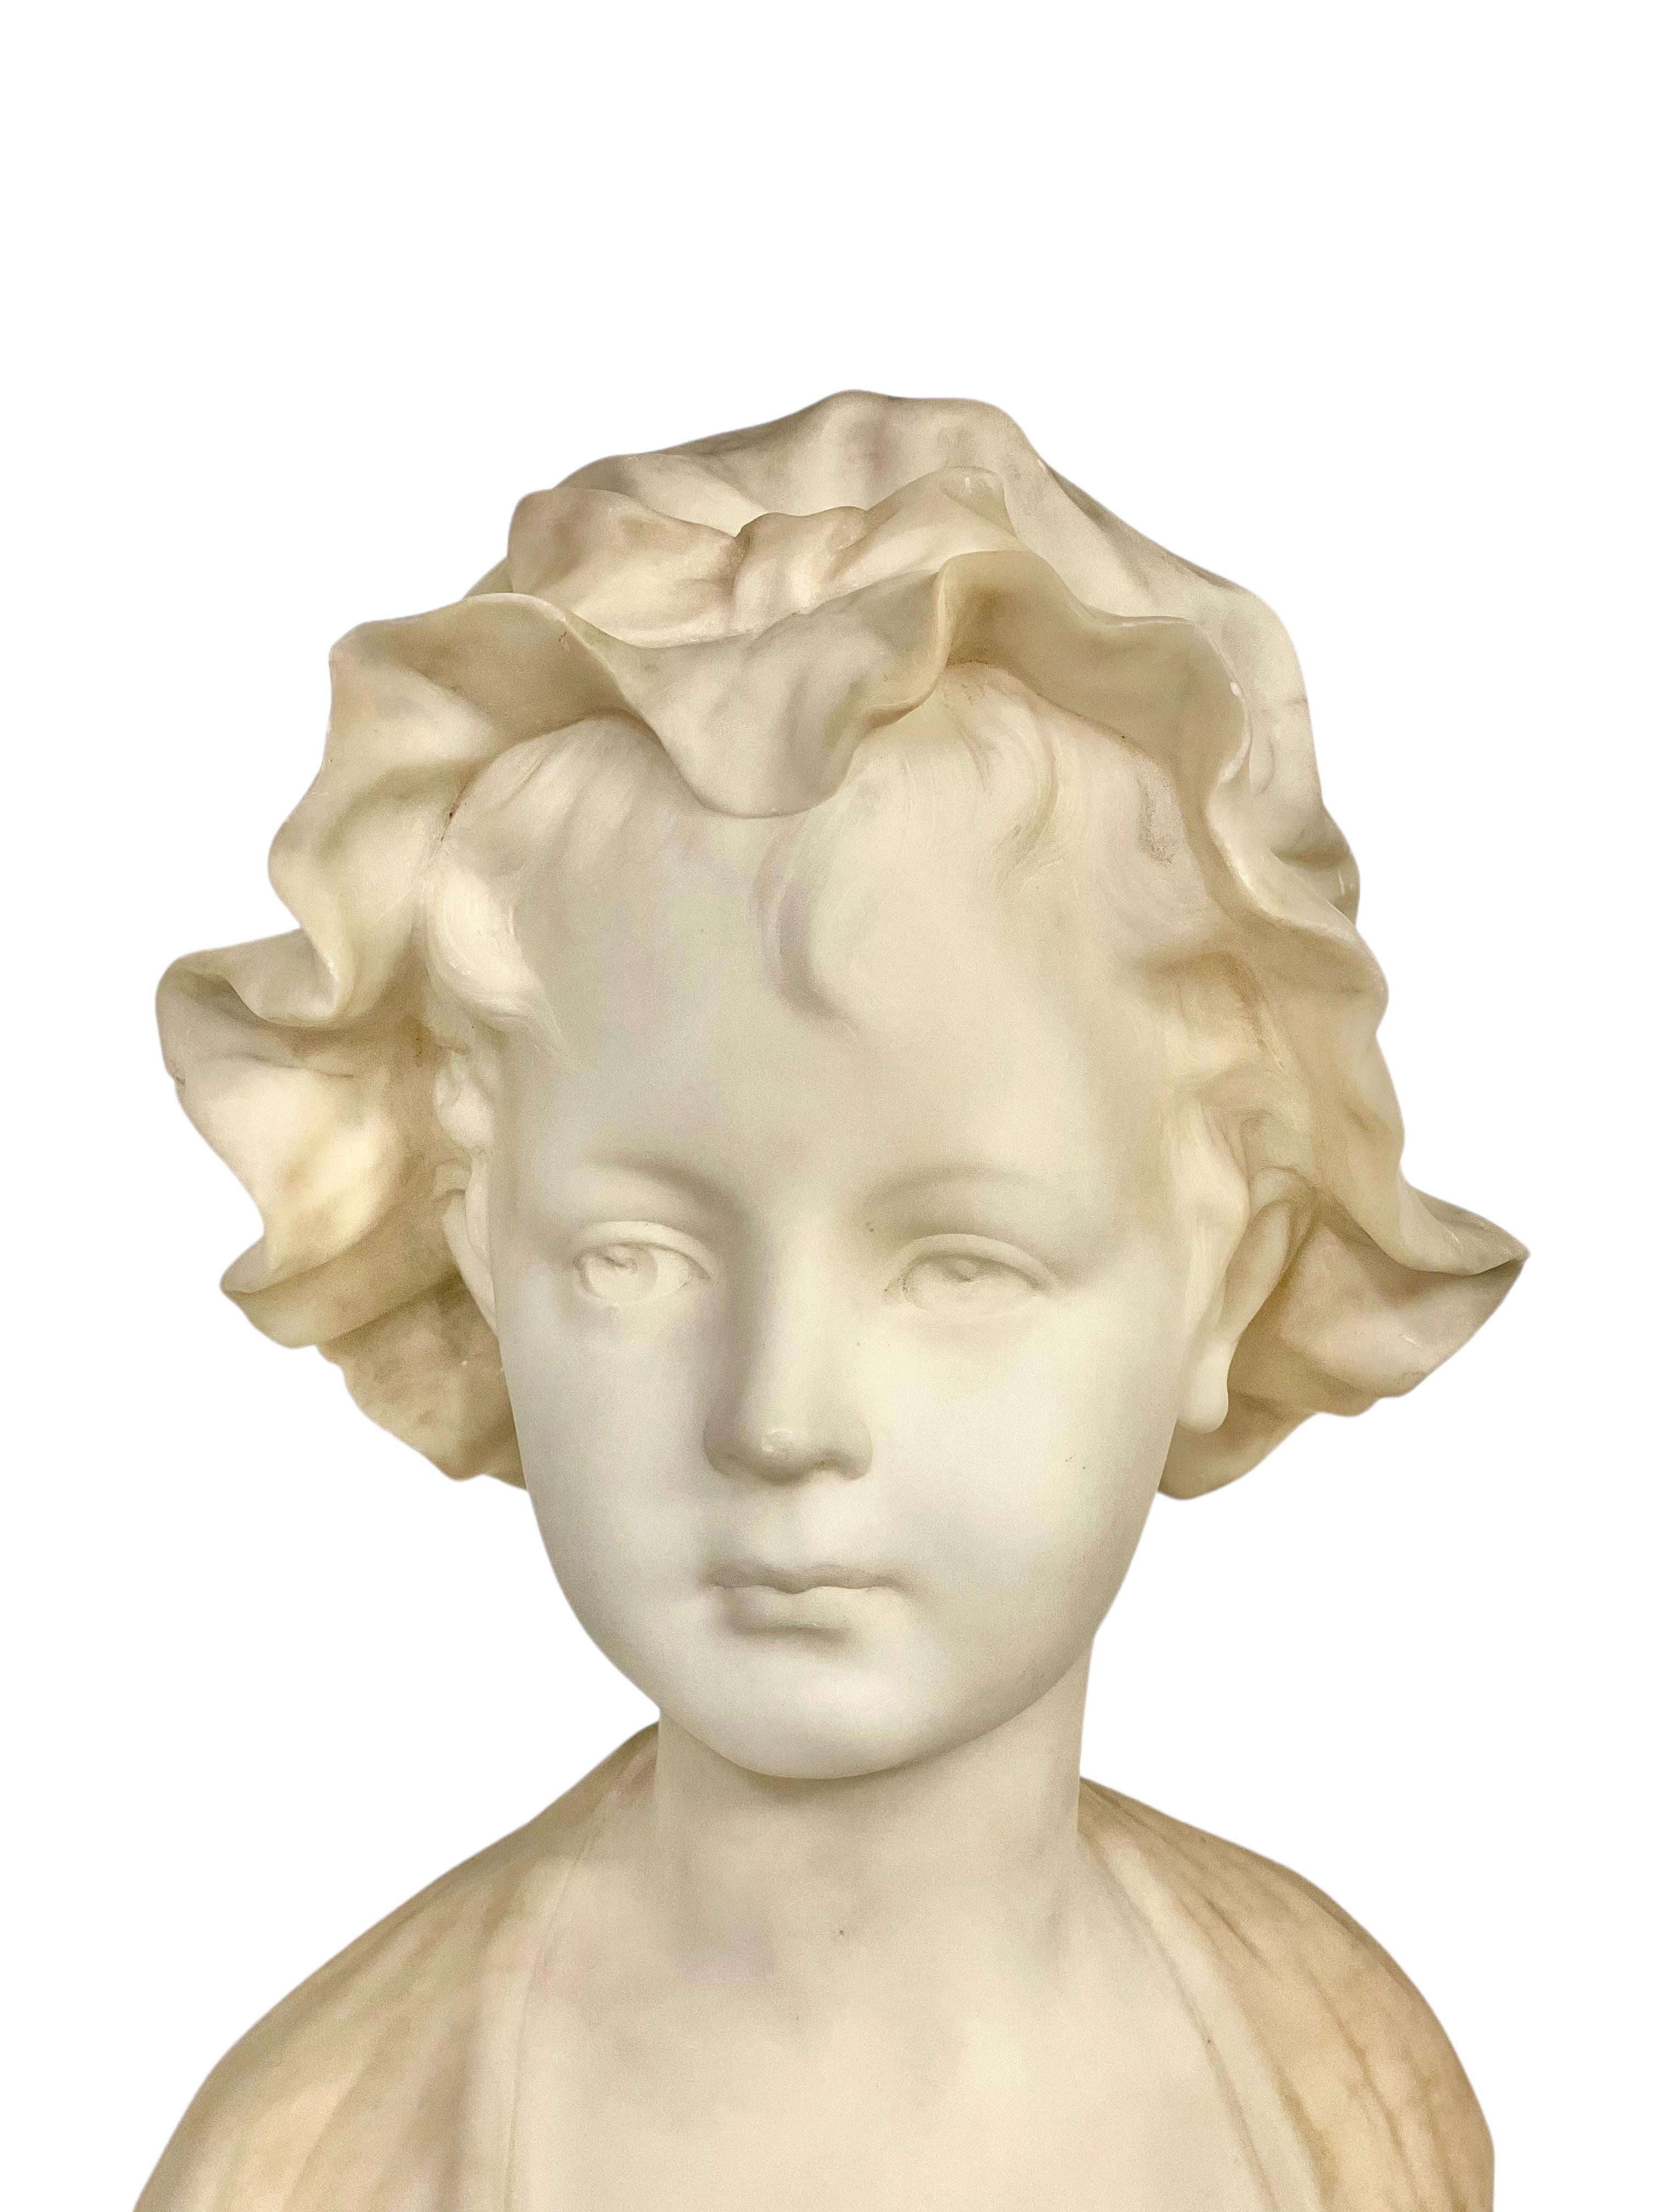 Diese Alabasterbüste aus dem 19. Jahrhundert stellt ein charmantes junges Mädchen mit einem exquisiten Profil dar. Die in makellosem Weiß gehaltene Statue verkörpert die Unschuld und Anmut der Jugend. Die kunstvoll geäderte graue Haube, die mit